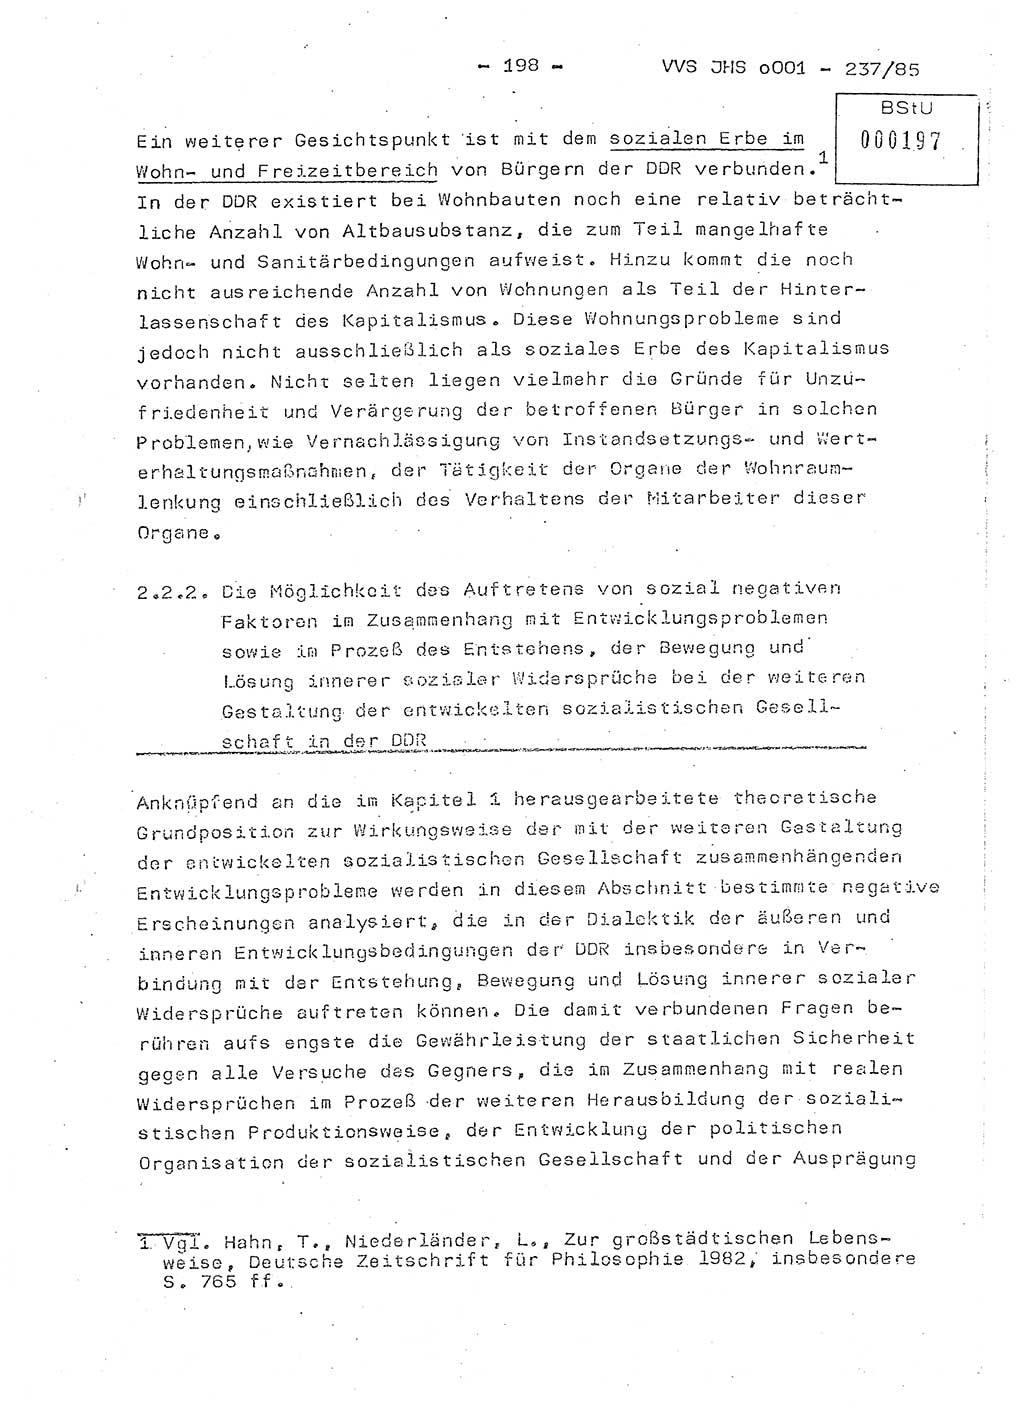 Dissertation Oberstleutnant Peter Jakulski (JHS), Oberstleutnat Christian Rudolph (HA Ⅸ), Major Horst Böttger (ZMD), Major Wolfgang Grüneberg (JHS), Major Albert Meutsch (JHS), Ministerium für Staatssicherheit (MfS) [Deutsche Demokratische Republik (DDR)], Juristische Hochschule (JHS), Vertrauliche Verschlußsache (VVS) o001-237/85, Potsdam 1985, Seite 198 (Diss. MfS DDR JHS VVS o001-237/85 1985, S. 198)